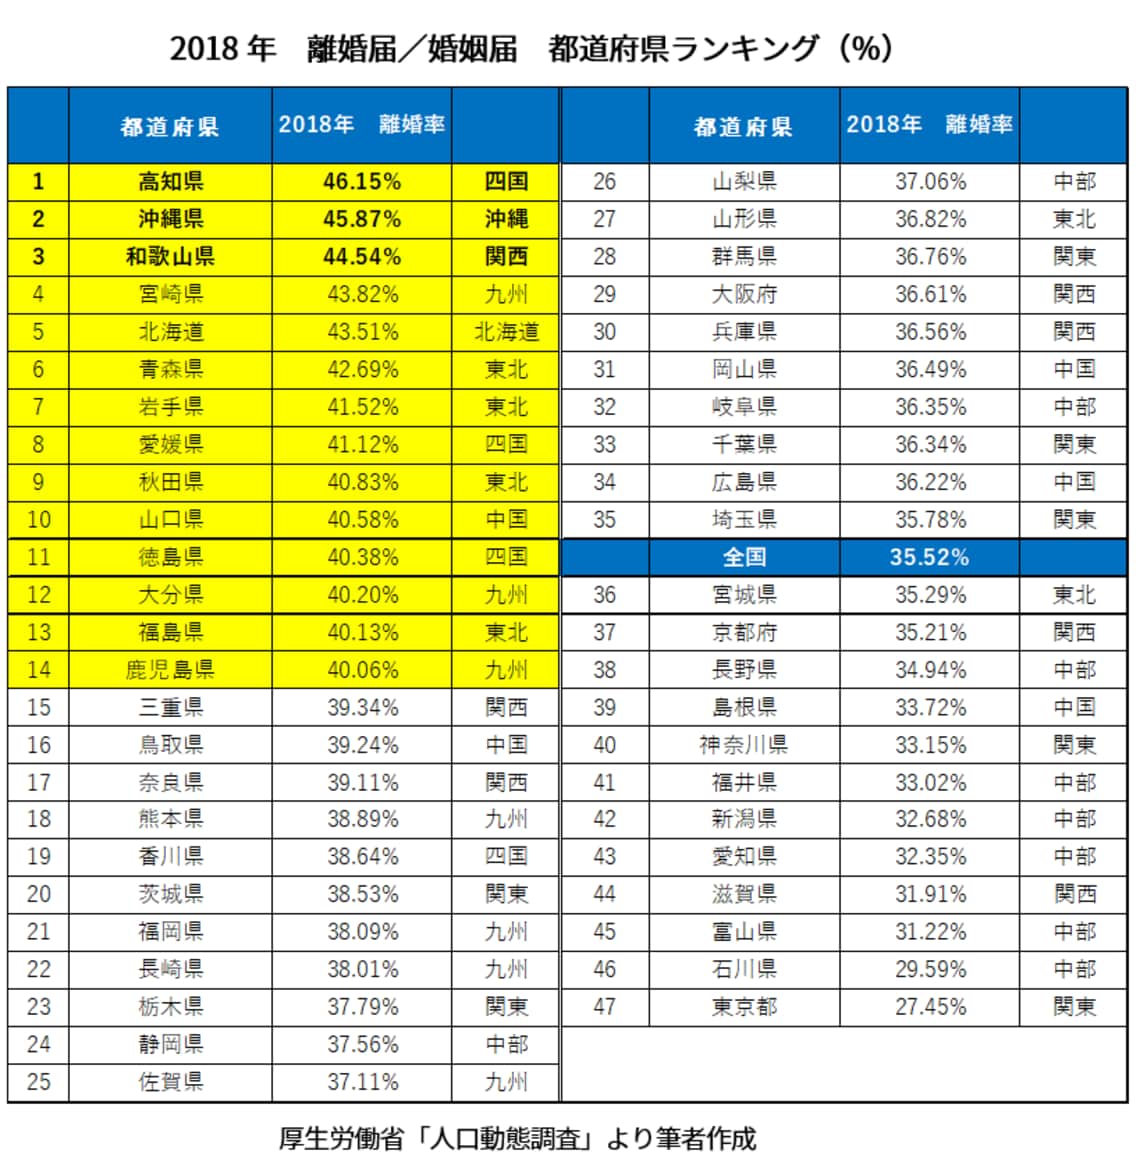 トップは46 離婚率 47都道府県ランキング 恋愛 結婚 東洋経済オンライン 経済ニュースの新基準